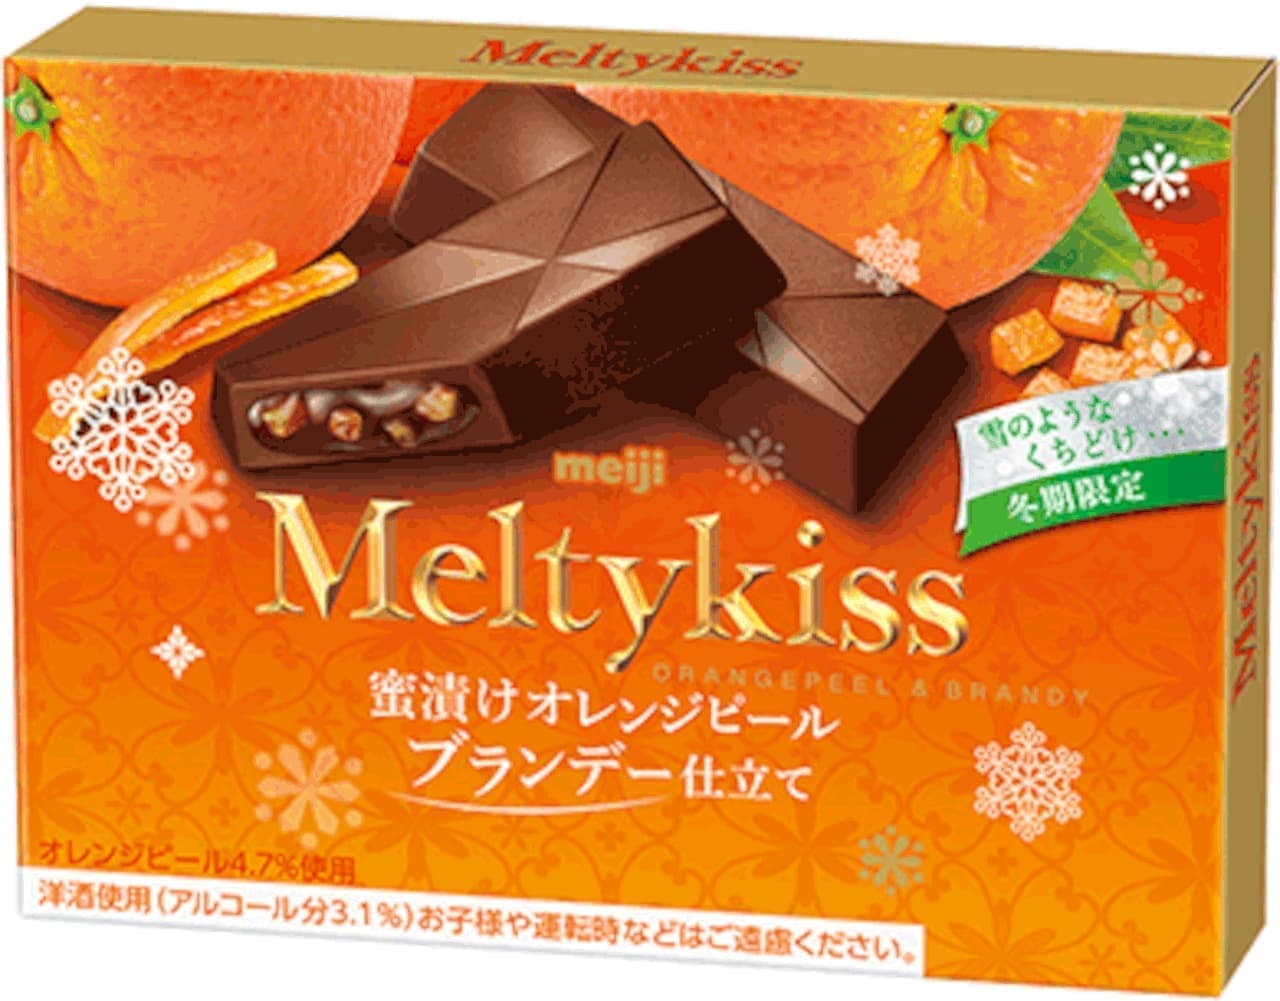 Meiji "Melty Kiss